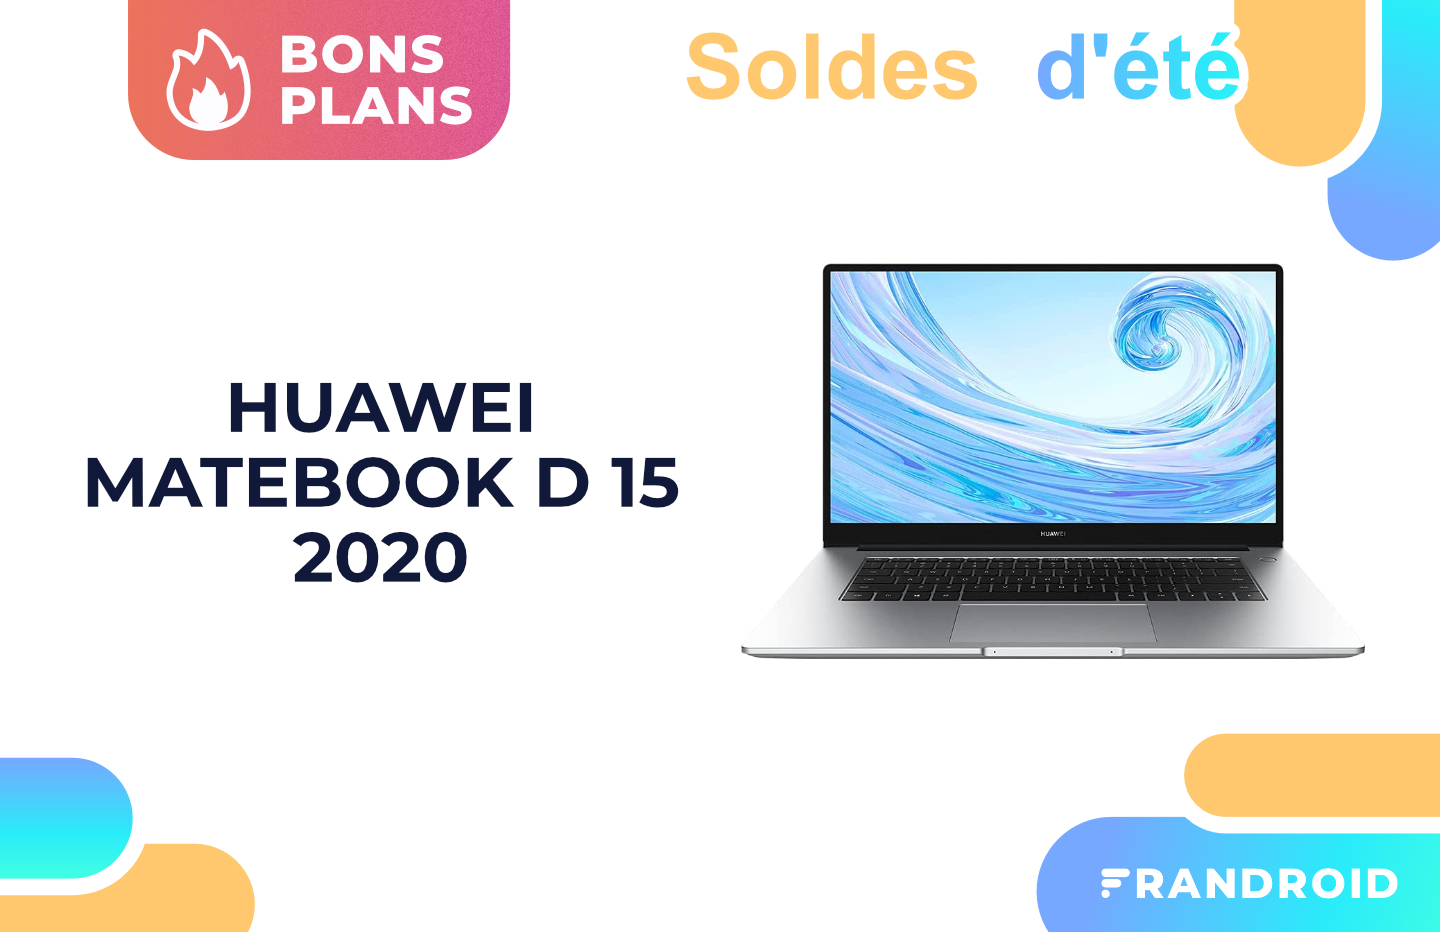 La version 2020 du Huawei Matebook D 15 profite d’une belle promotion